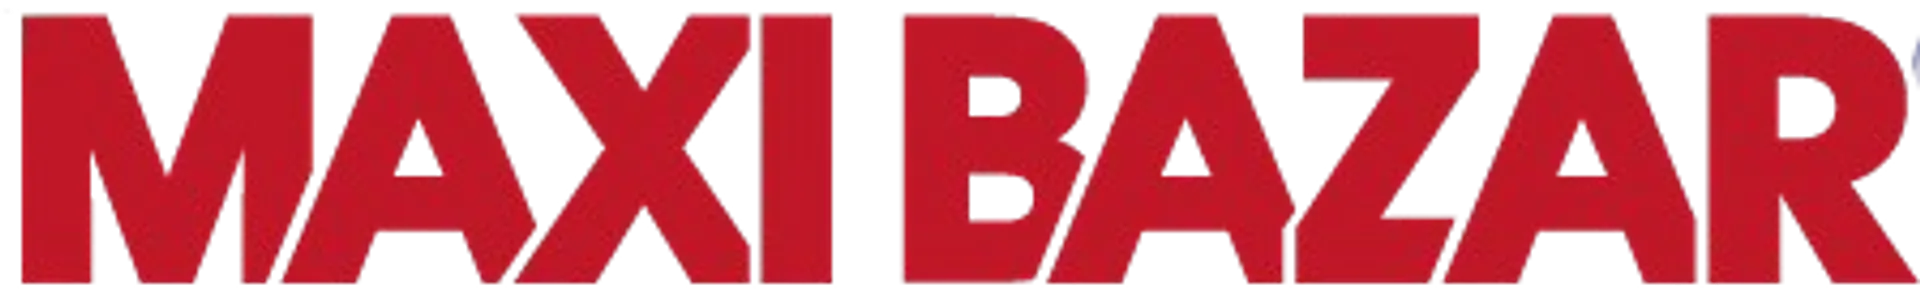 MAXI BAZAR logo du catalogue